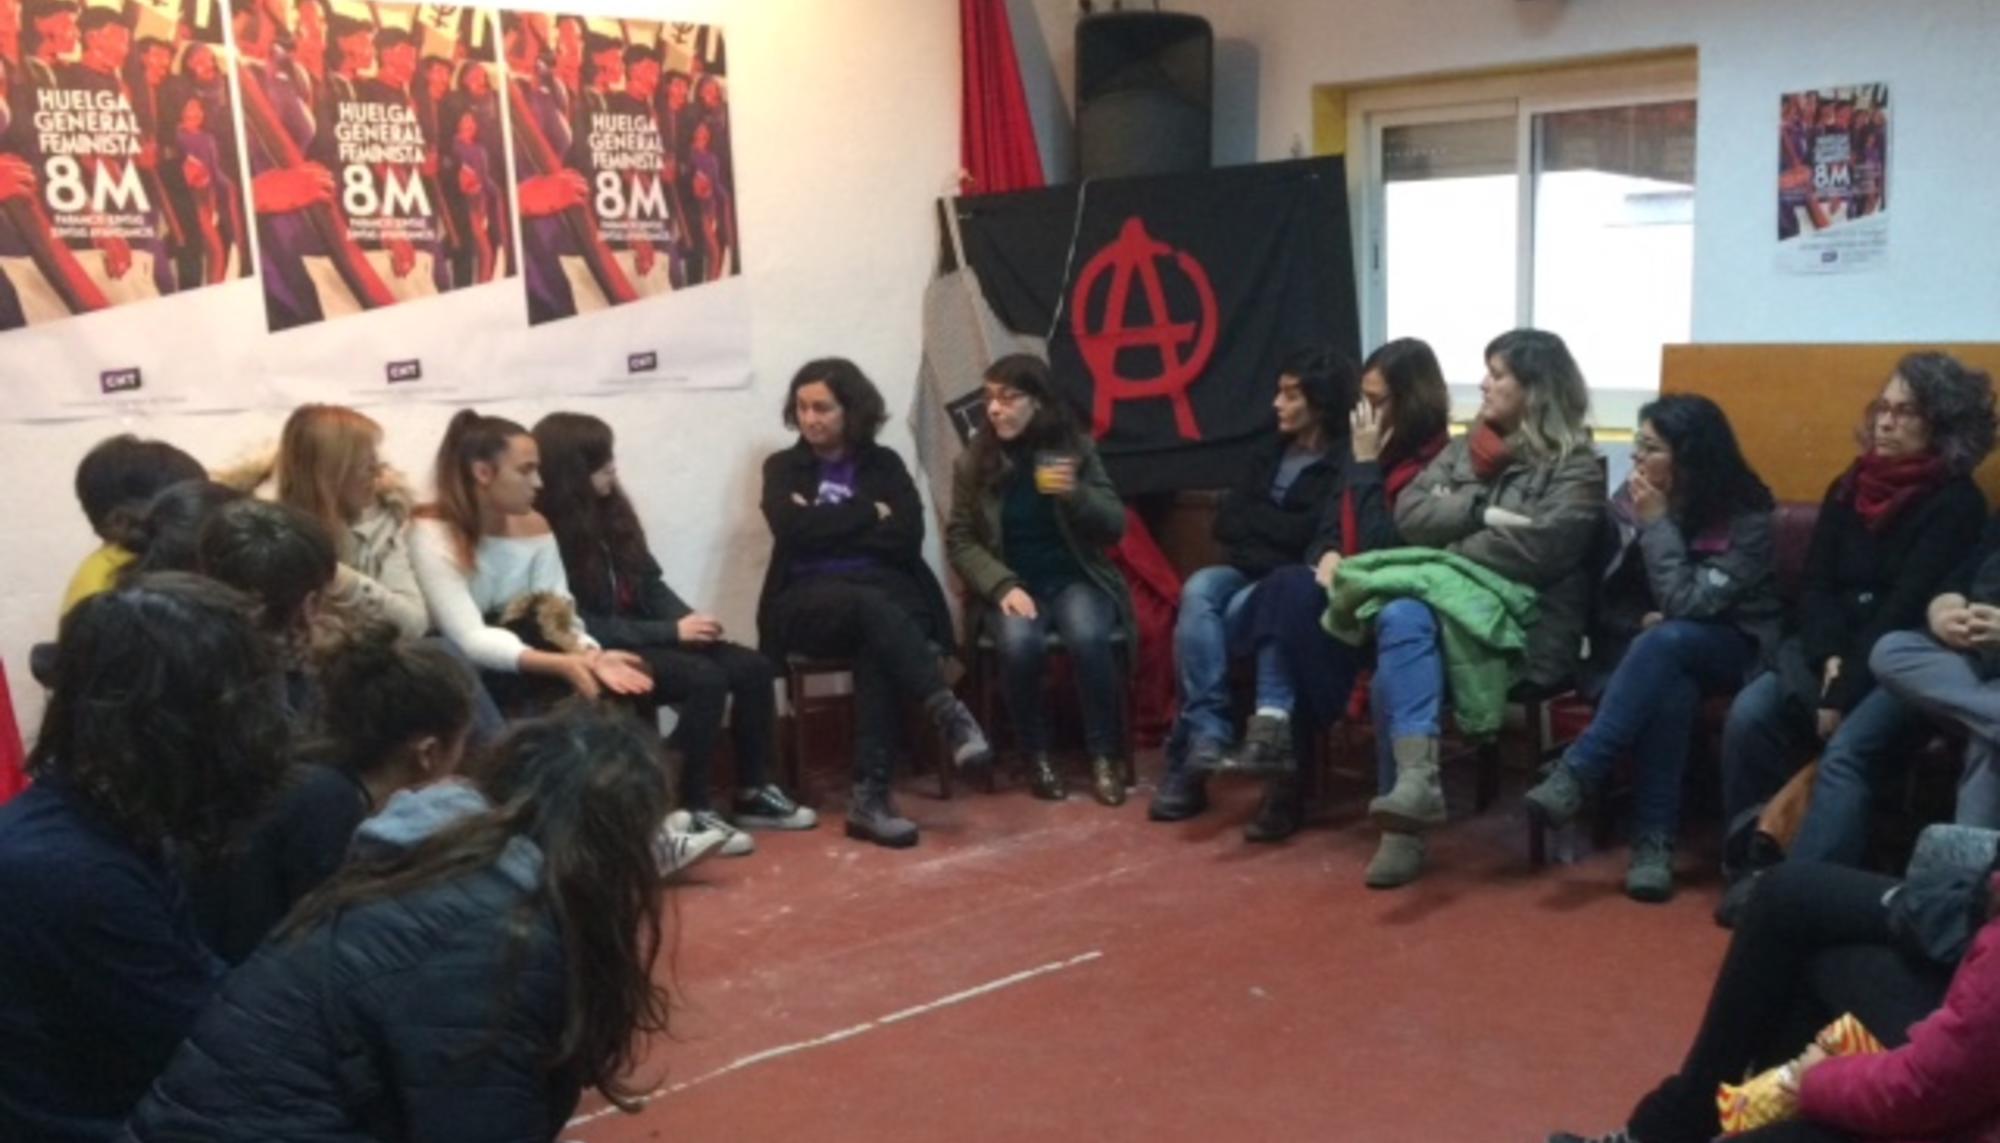 Preparatoria Huelga feminista Mérida